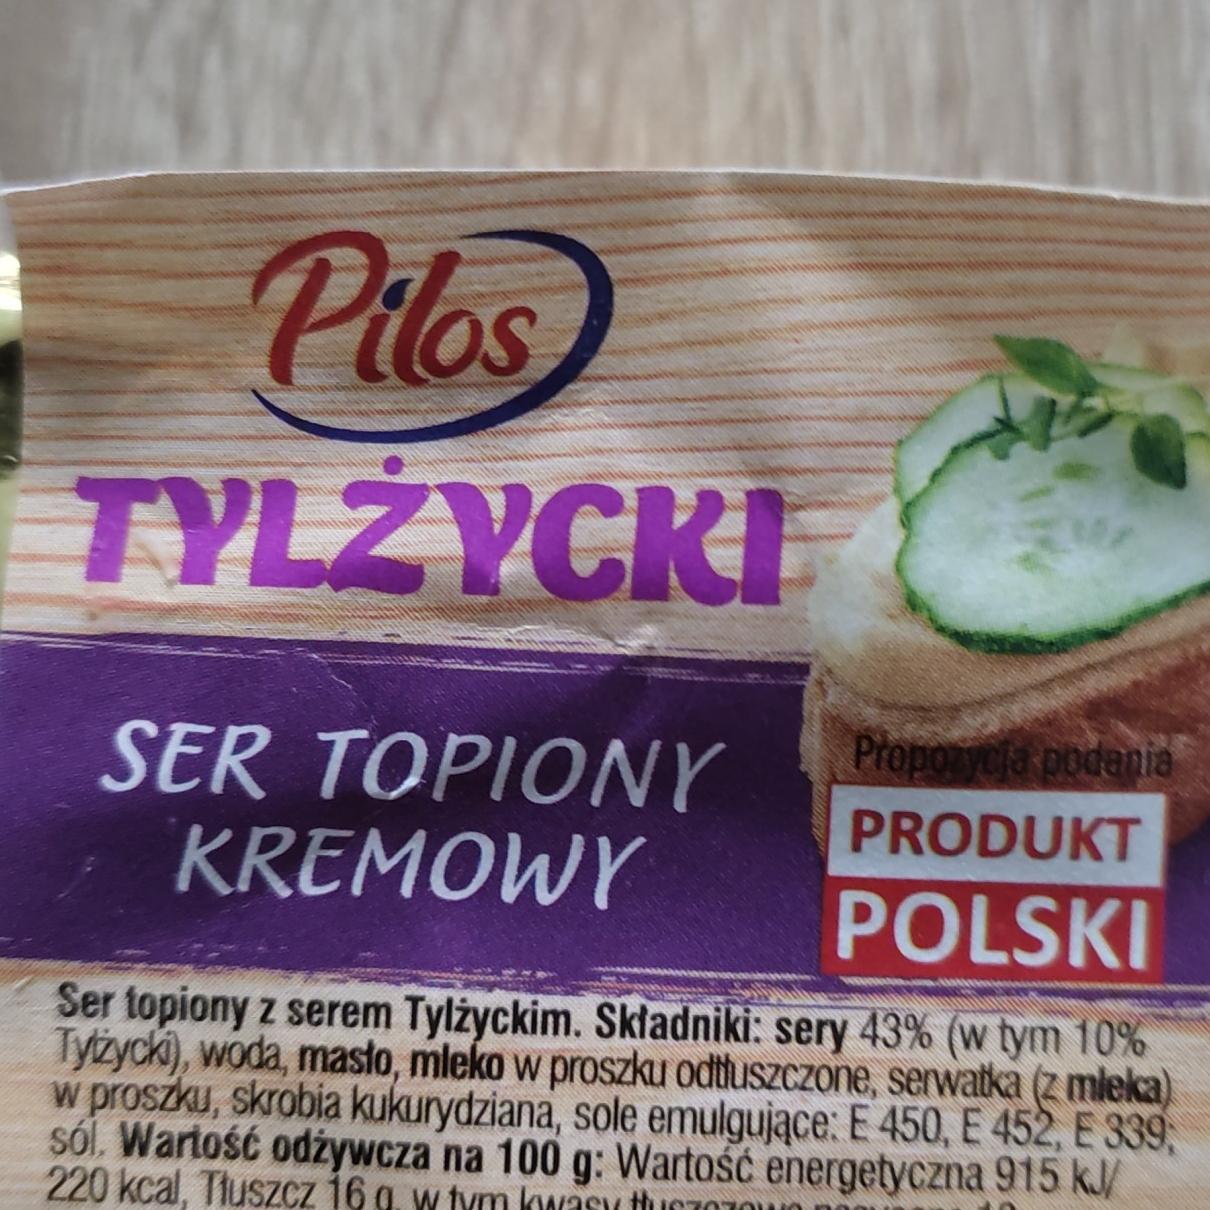 Fotografie - Tylzycki ser topiony kremowy Pilos